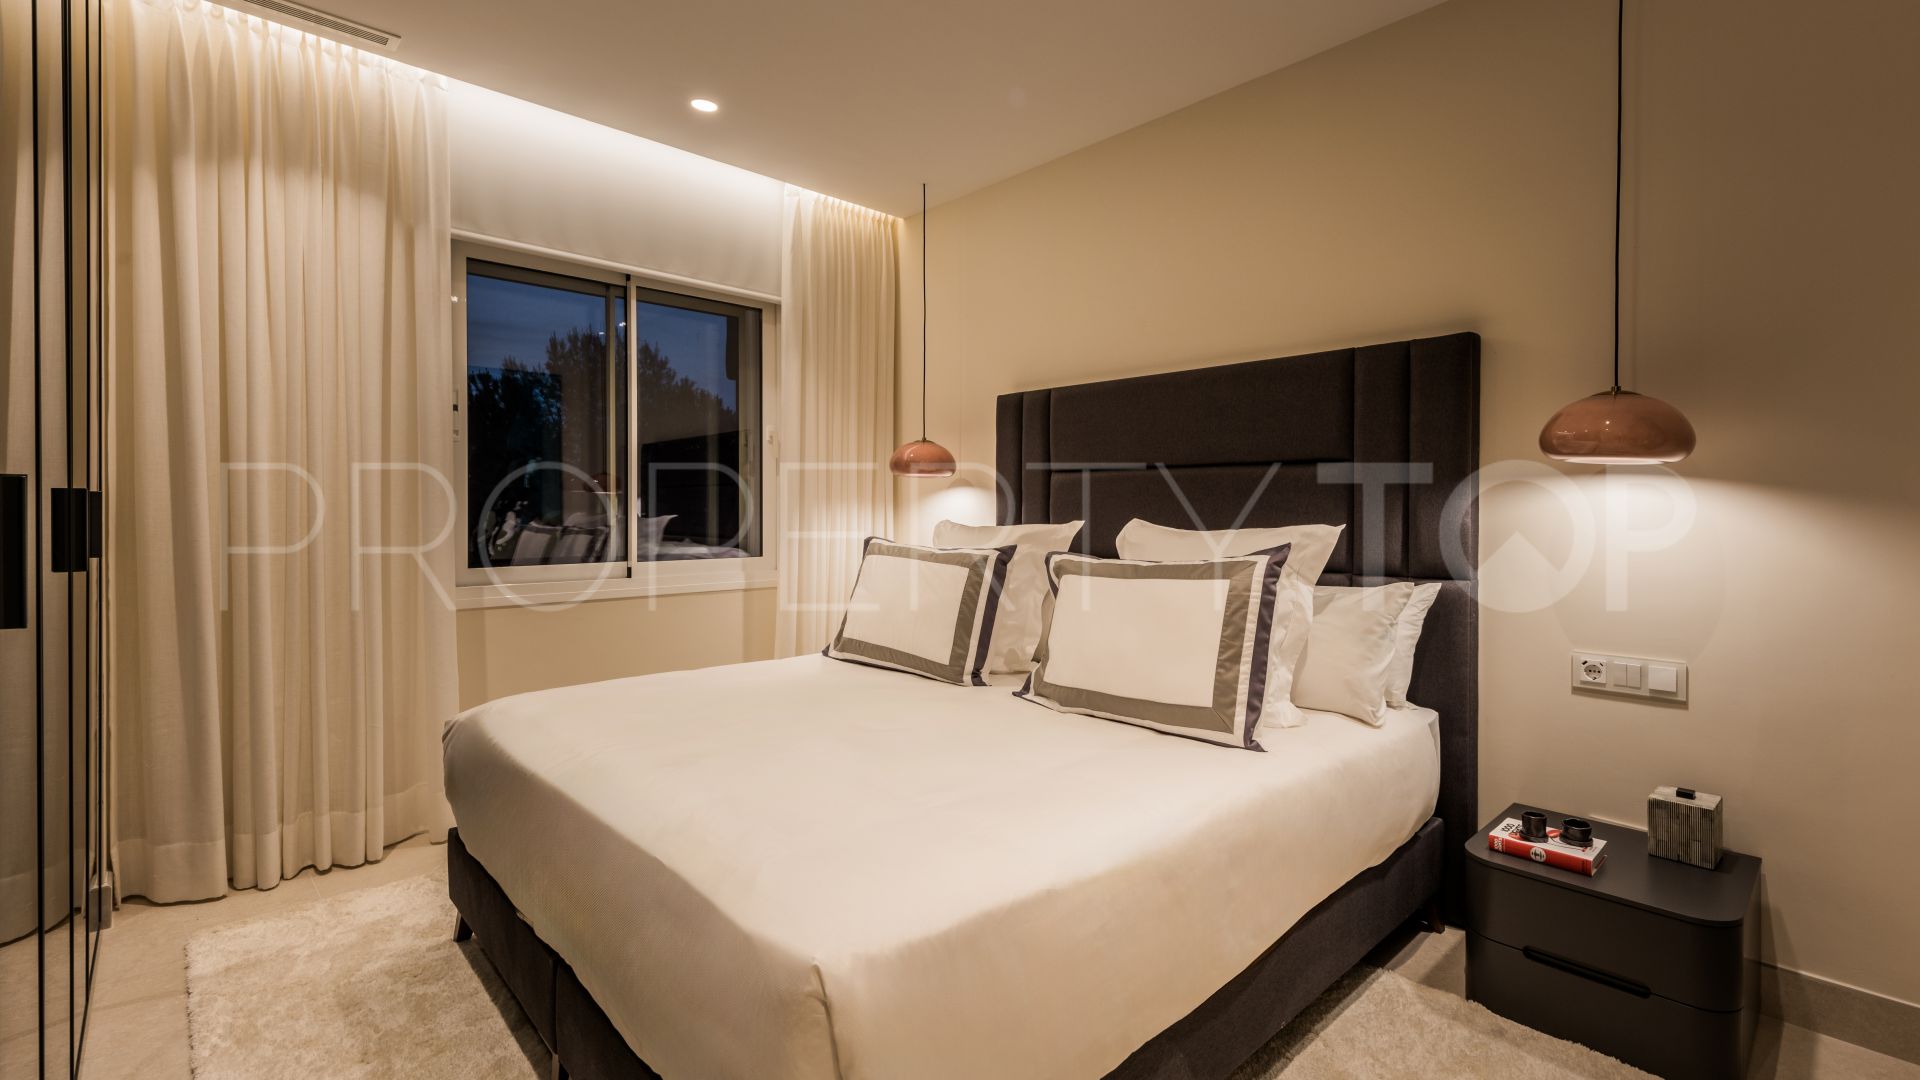 3 bedrooms apartment in Los Granados del Mar for sale